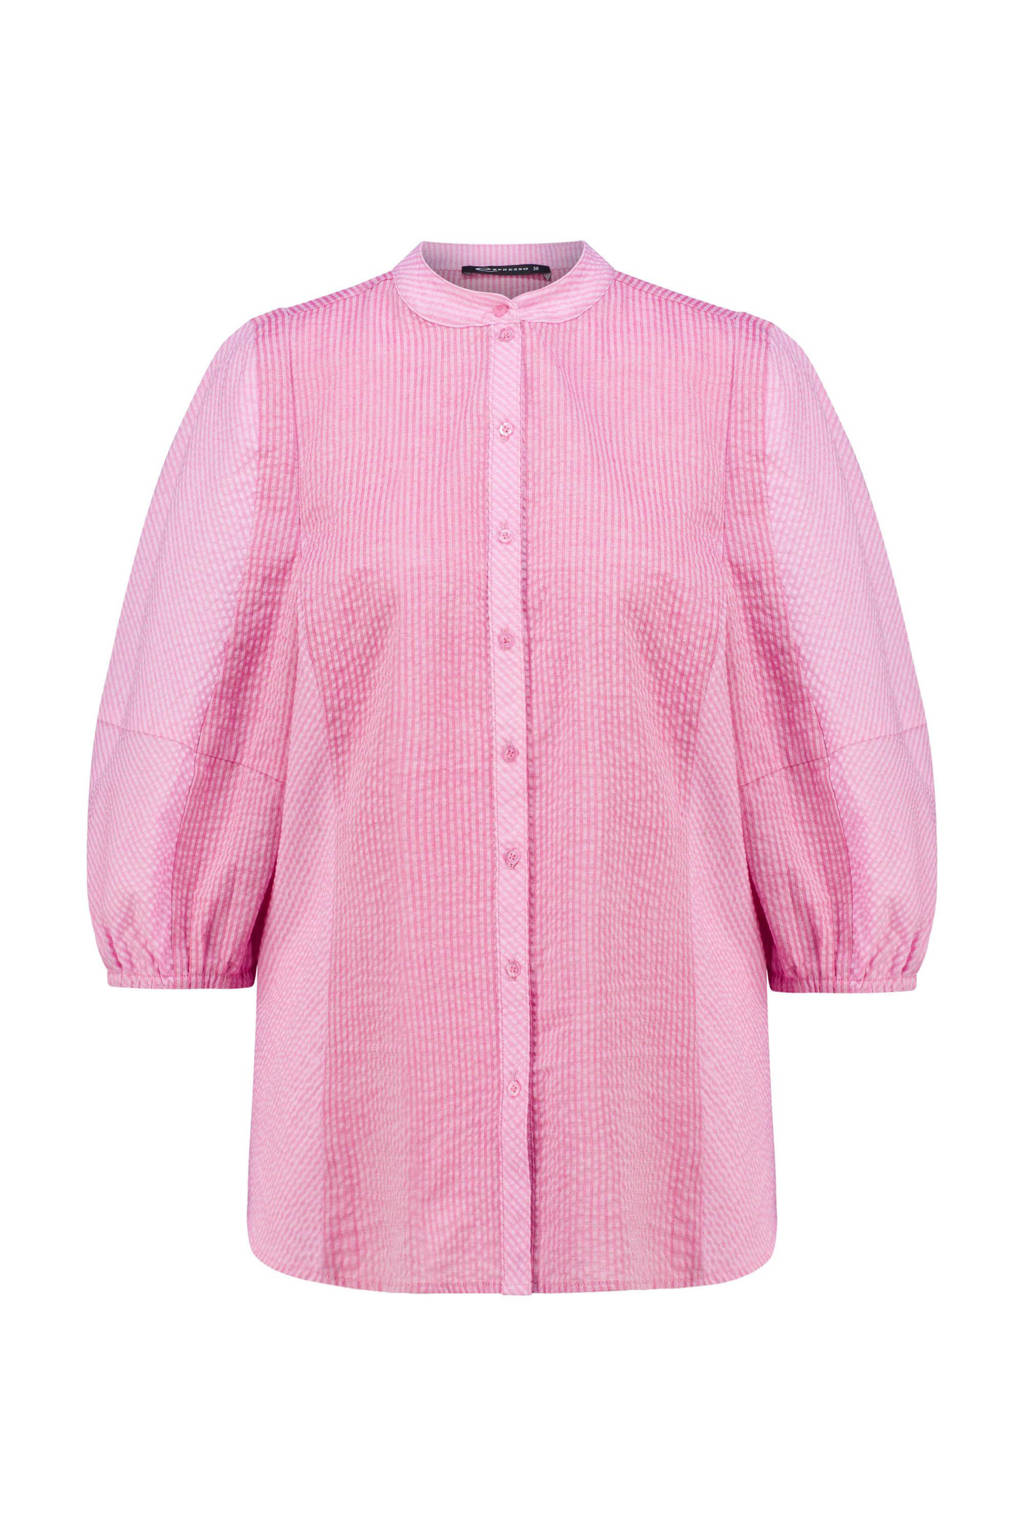 Heel Spookachtig Overtreden Expresso gestreepte blouse roze | wehkamp